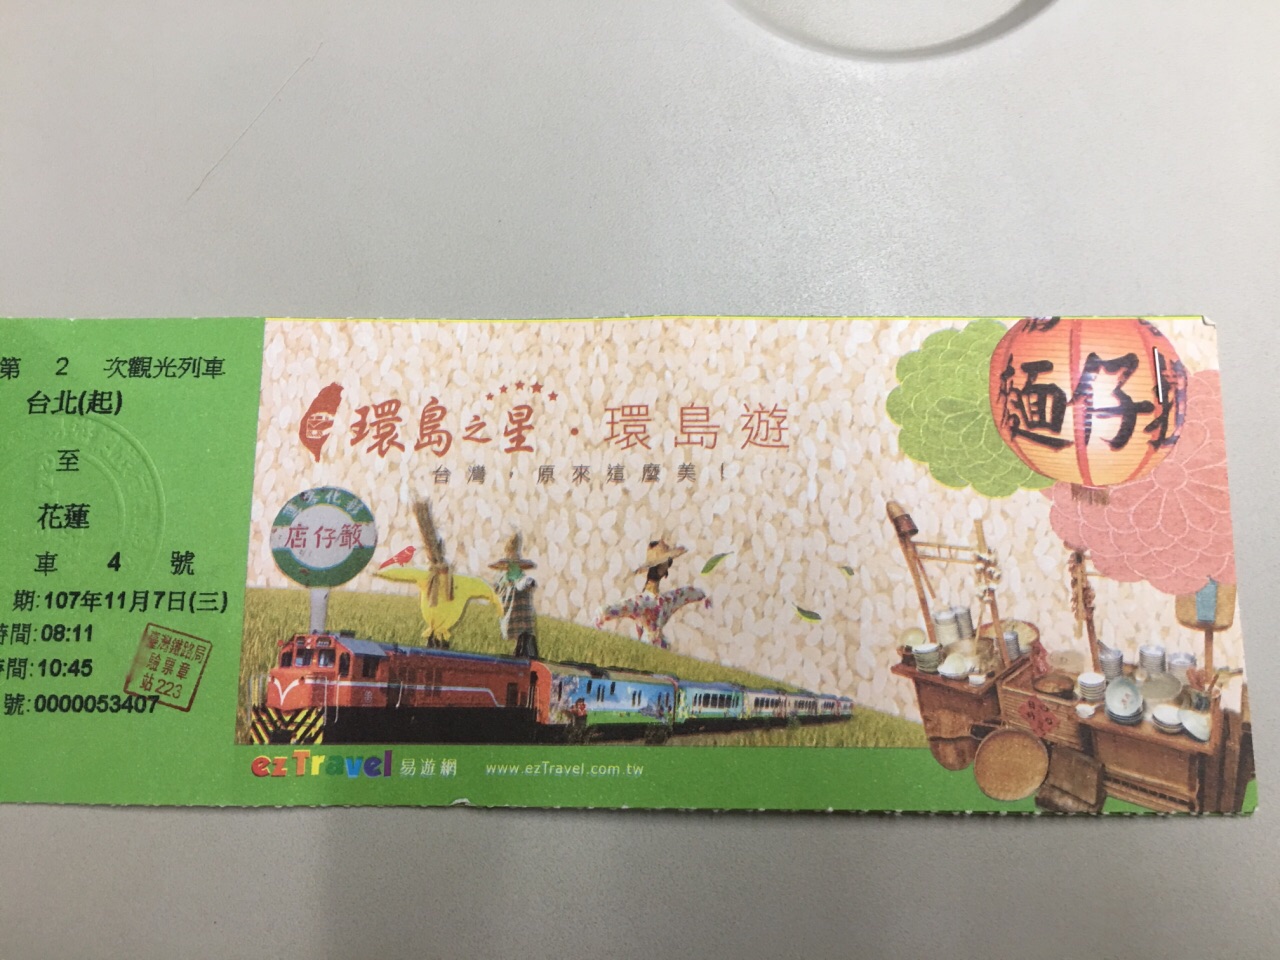 花莲太鲁阁国家公园一日游 台北出发 乘坐环岛之星 含三餐 线路推荐 携程玩乐